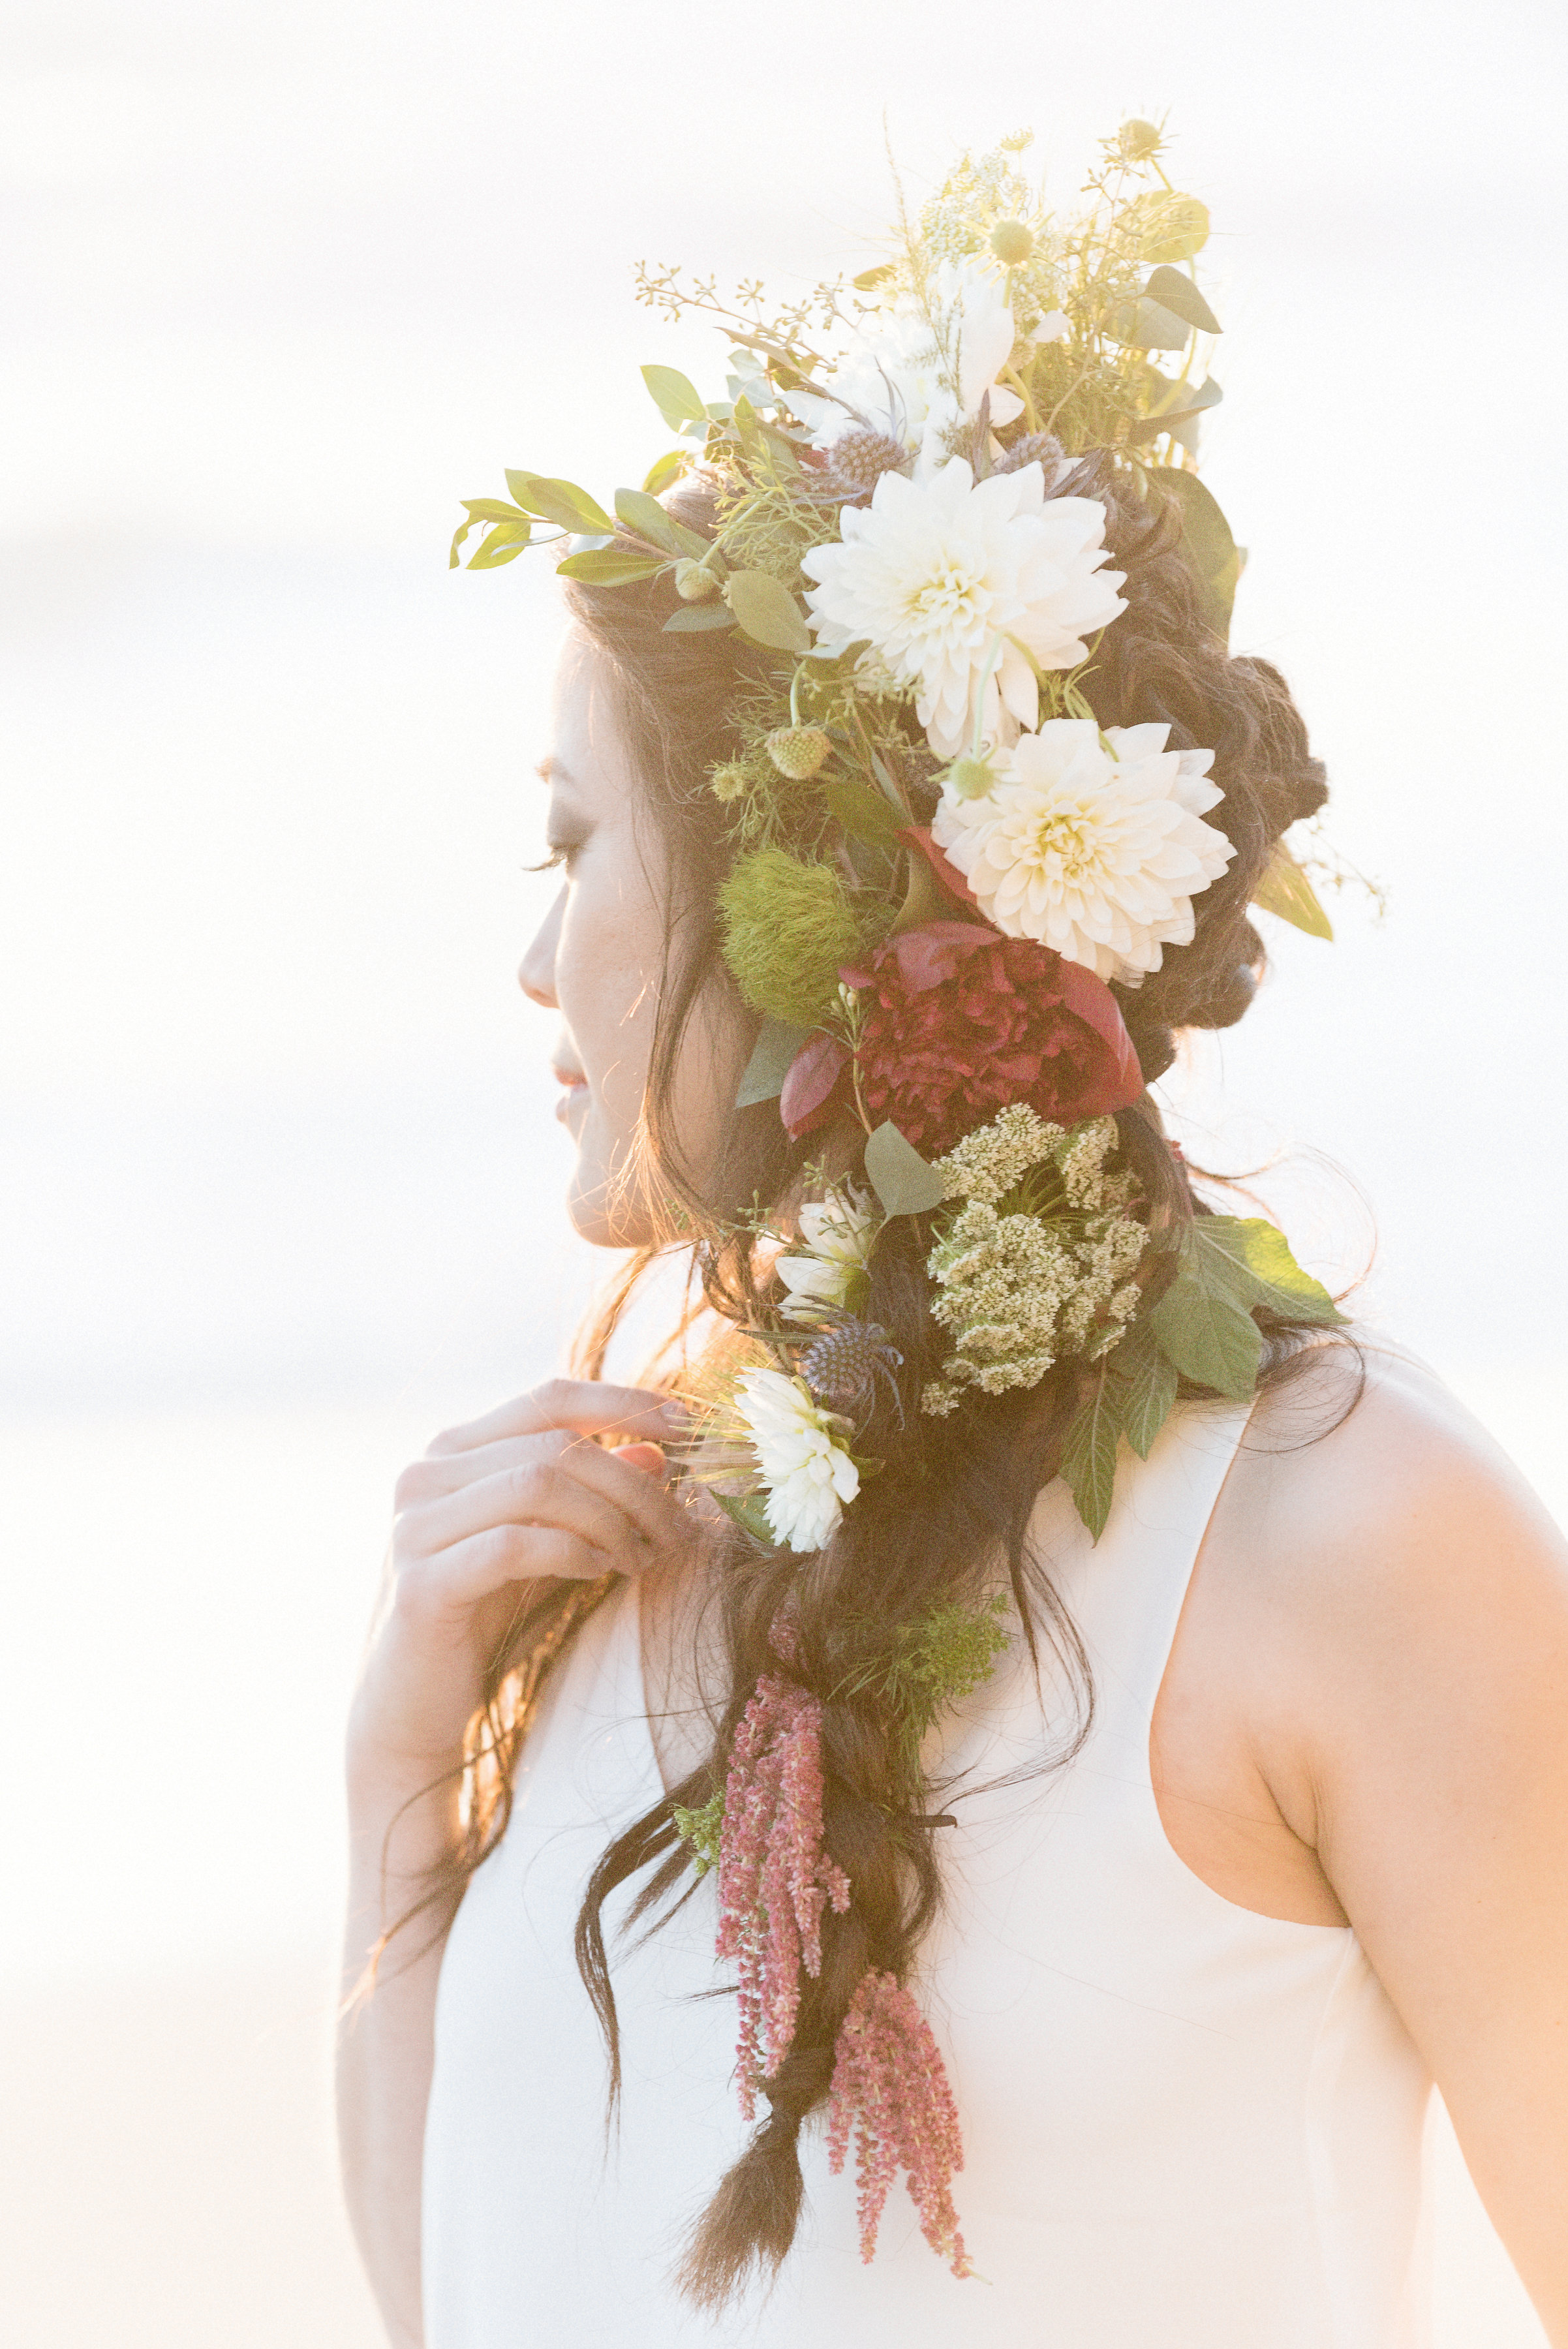 San Diego Portrait Photography | Flower Crown | Solana Beach | Tulle Skirt